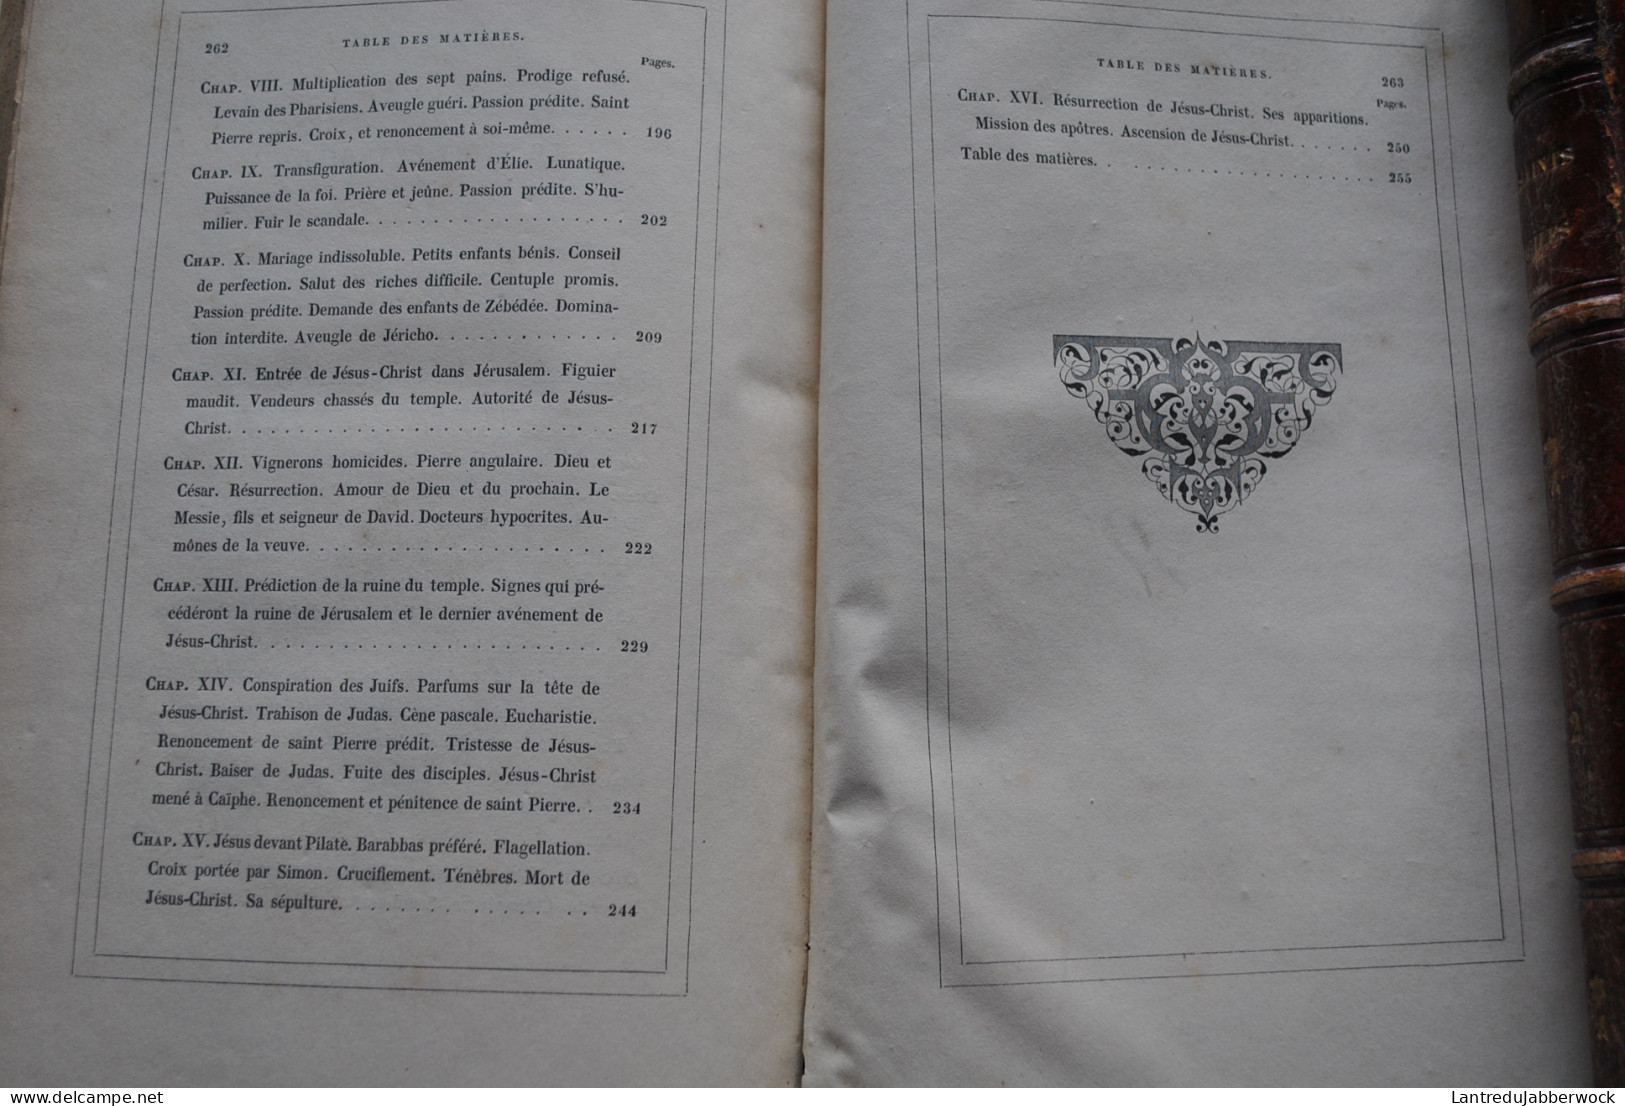 Les Saints Evangiles Abbé Dassange Vicaire général de Montpellier ill. Johannot Cavelier Brevière 2 Vol. CURMER 1836